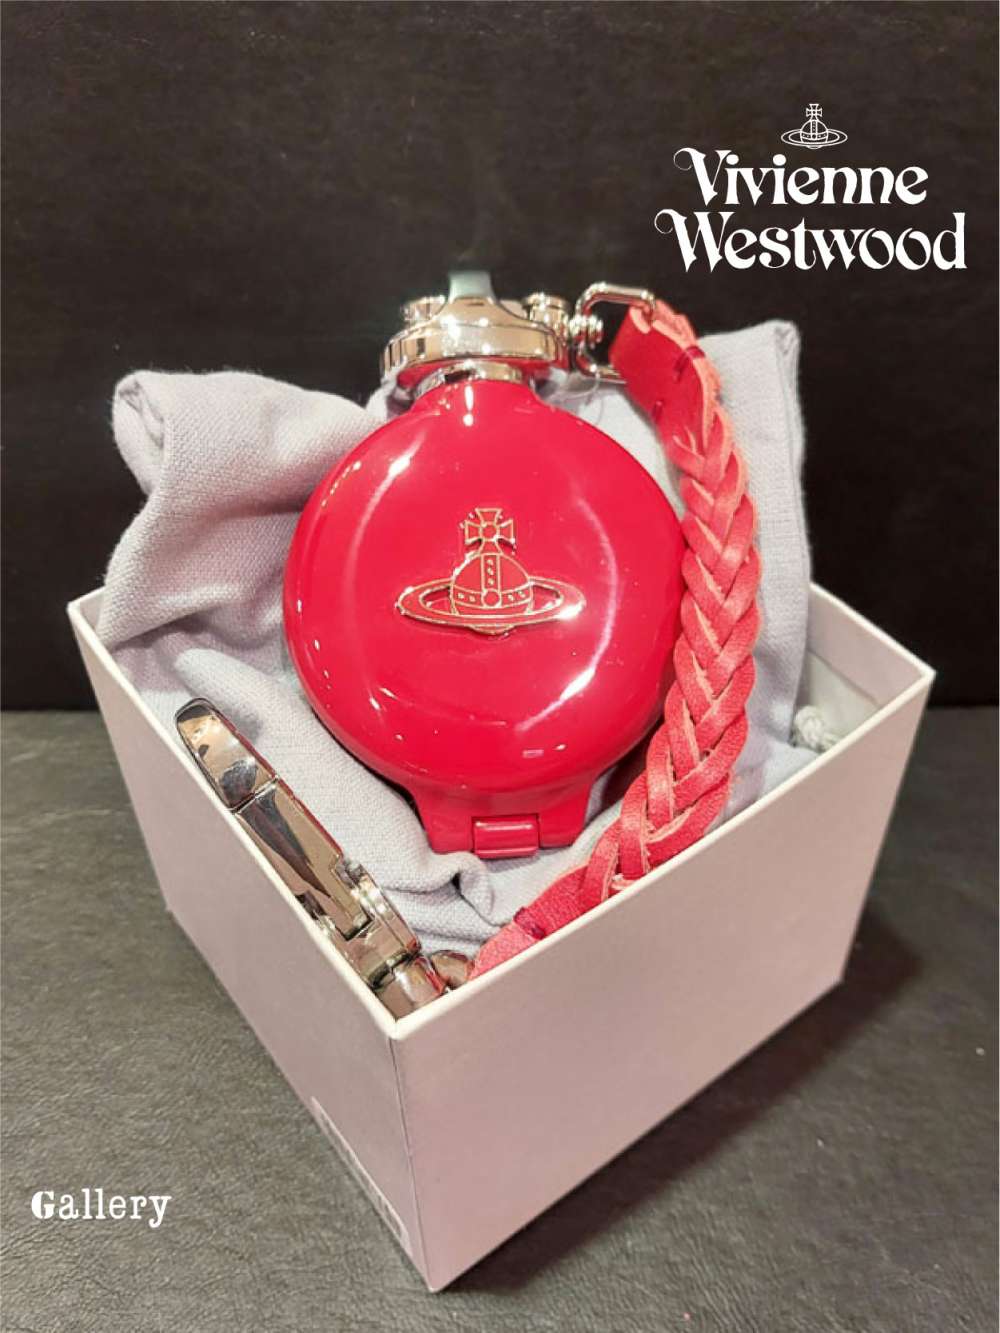 インテリア・住まい・小物Vivienne Westwood 携帯灰皿 レッド - 灰皿